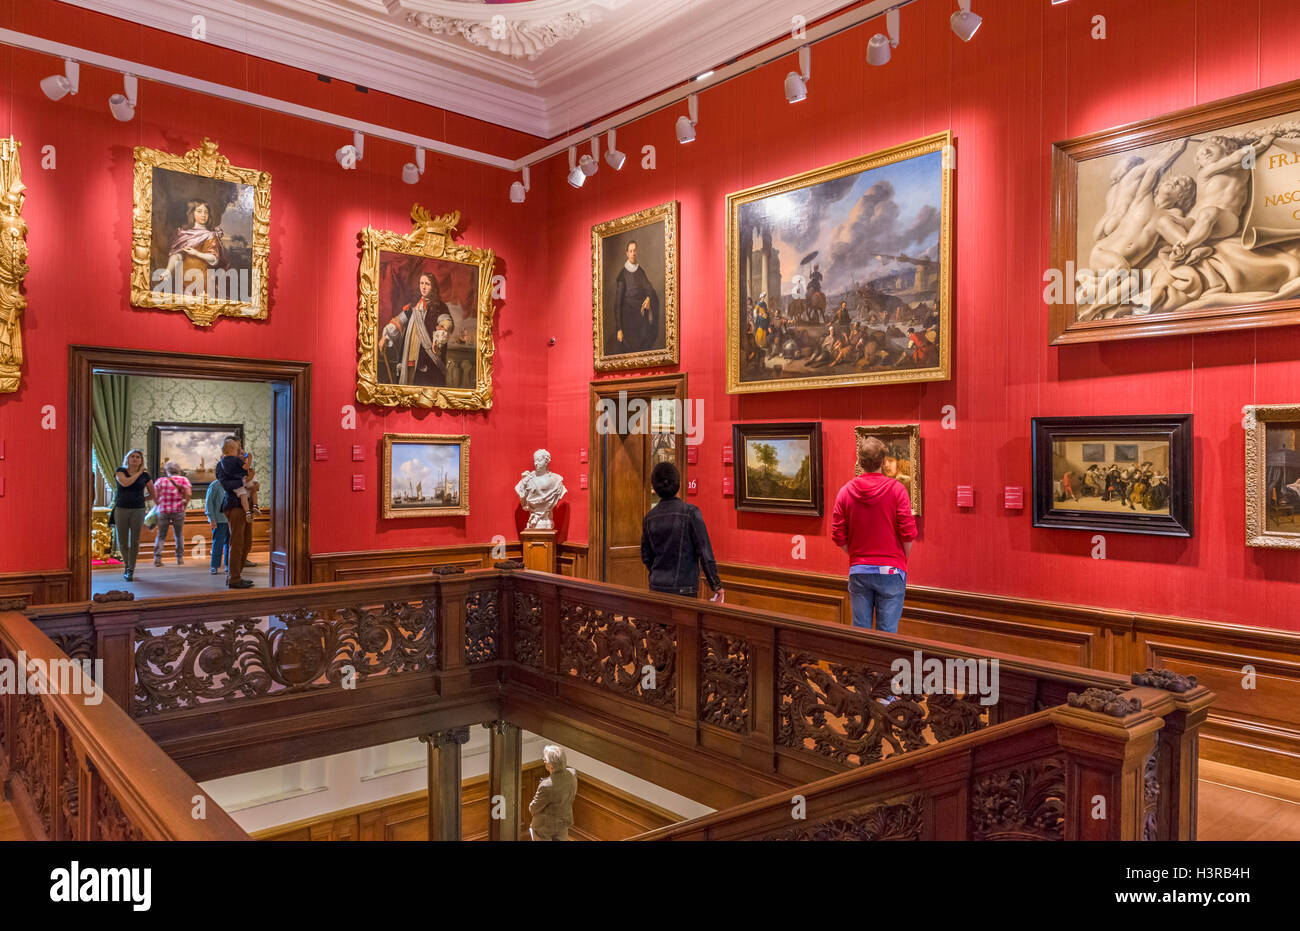 Intérieur du musée d'art de Mauritshuis, La Haye, Pays-Bas Banque D'Images